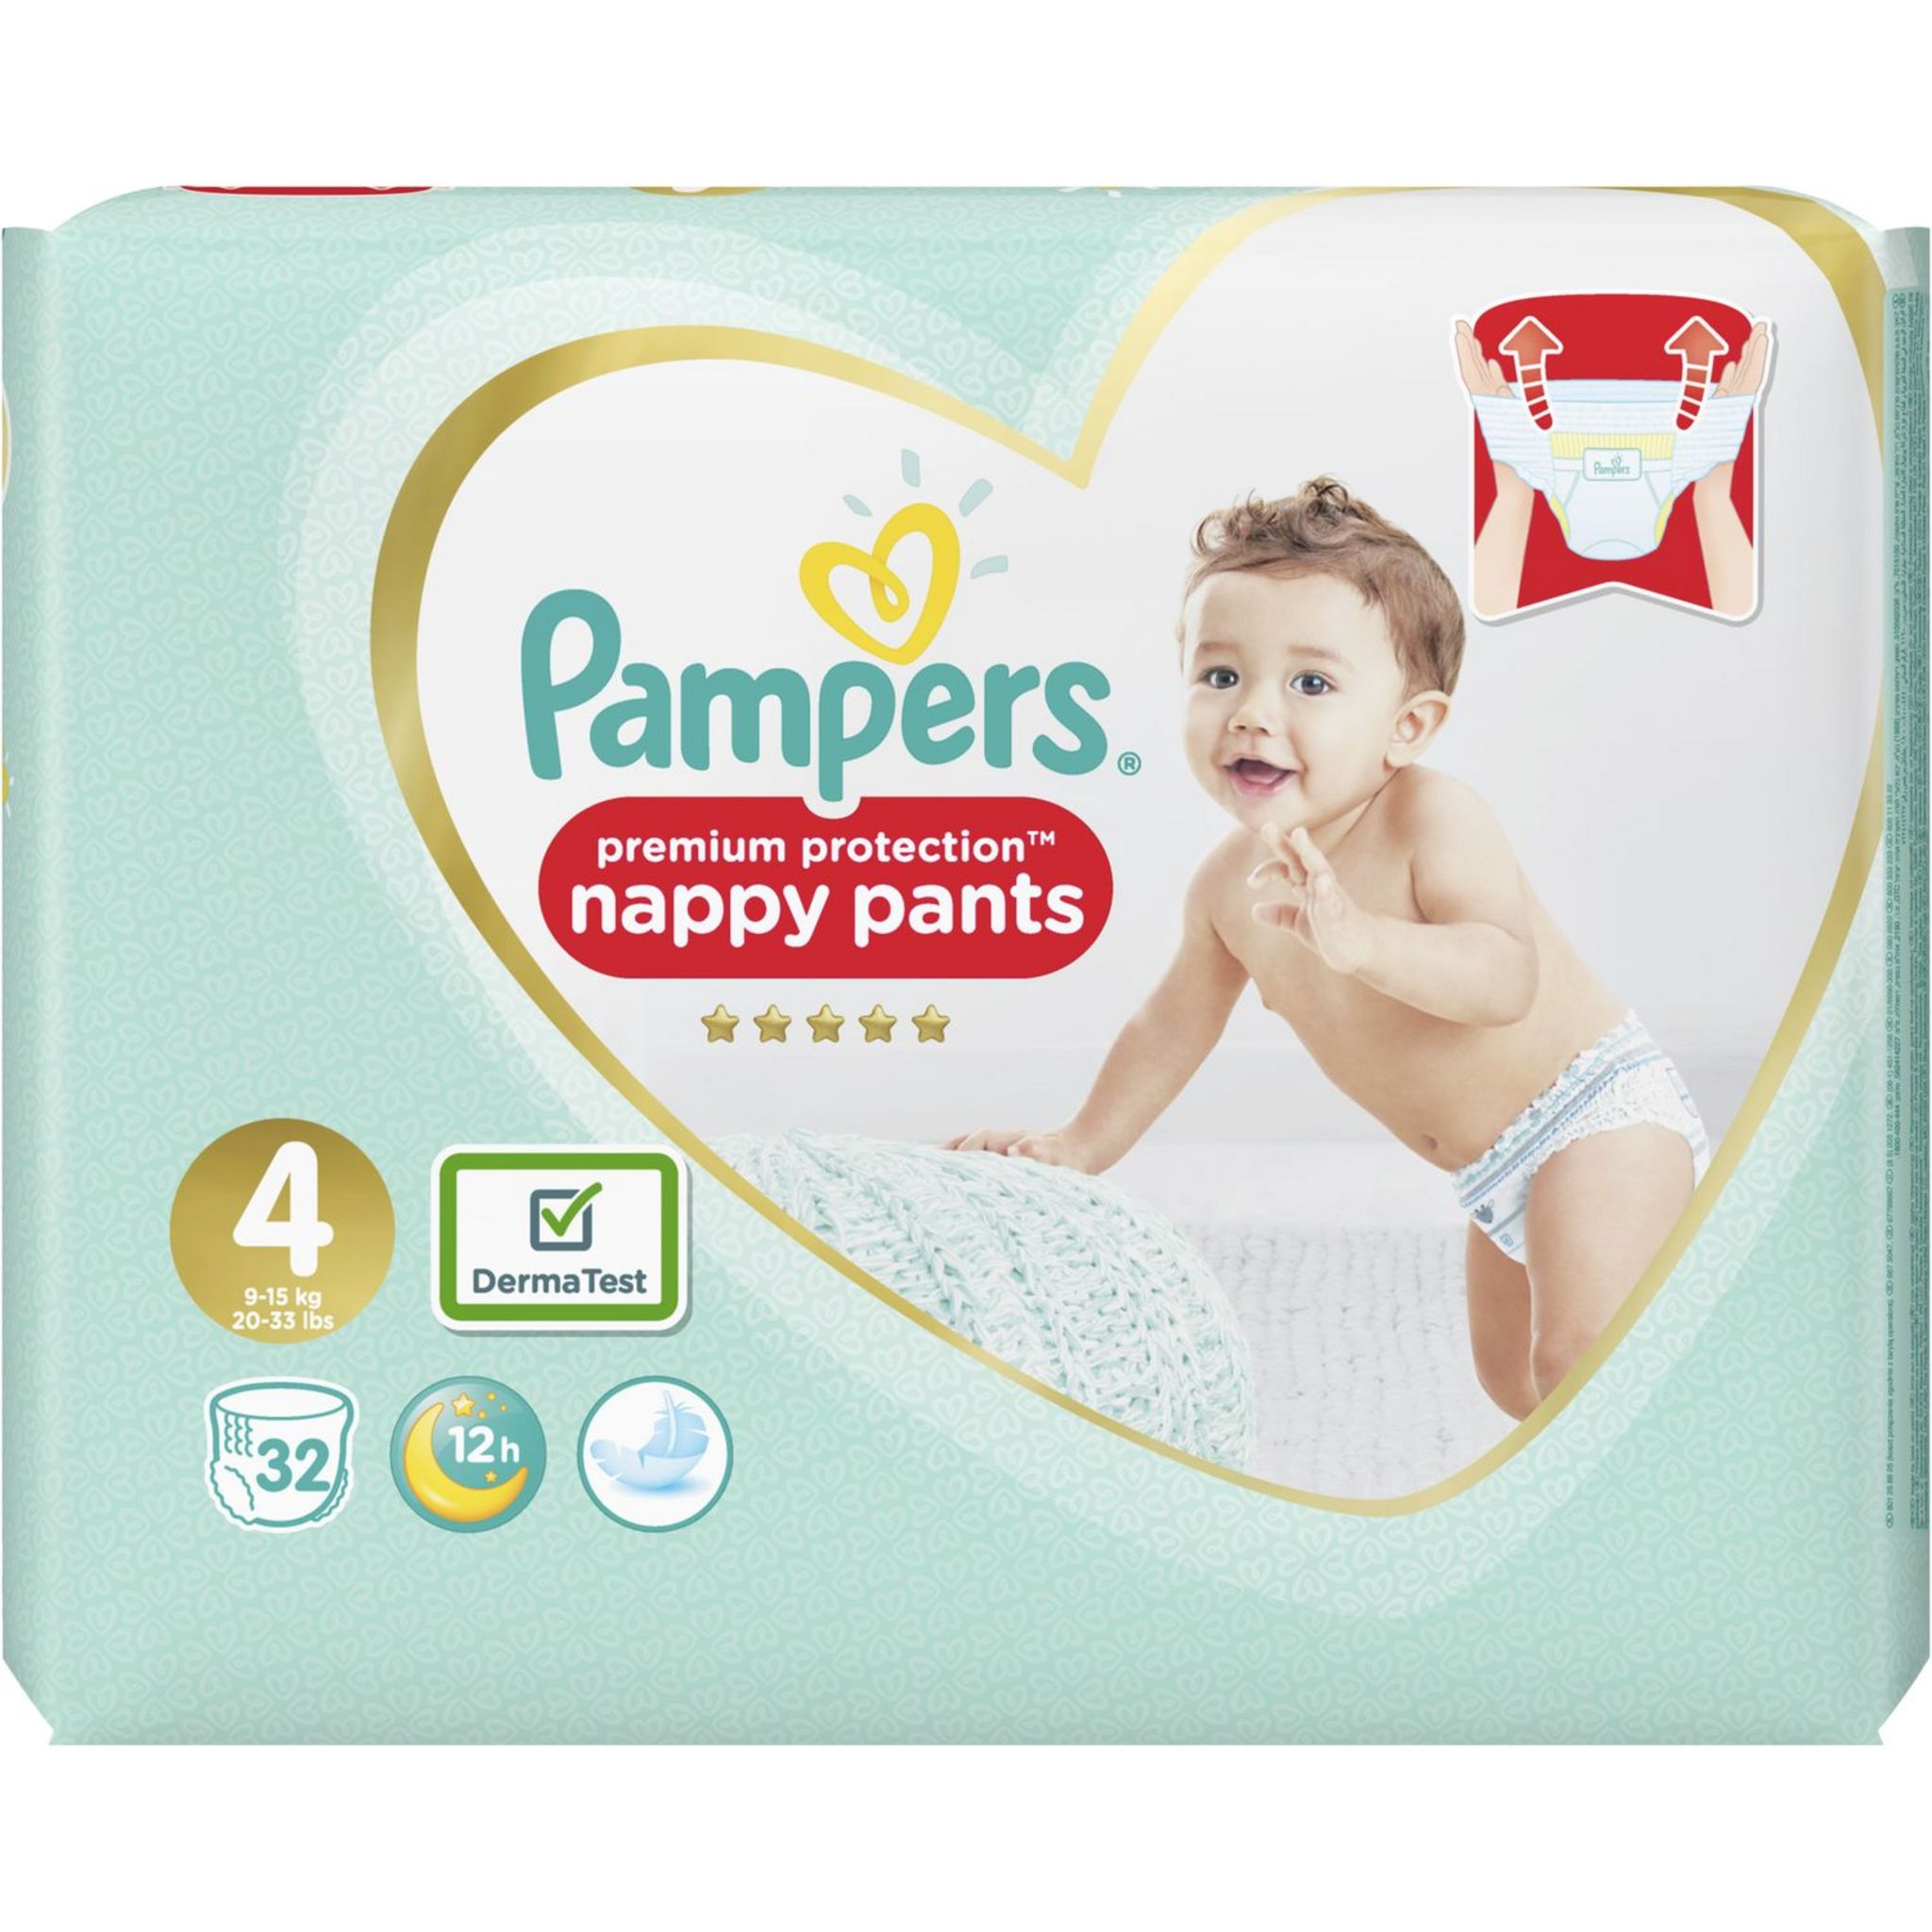 Acheter en ligne PAMPERS Baby-Dry Pants 8 (117 pièce) à bons prix et en  toute sécurité 